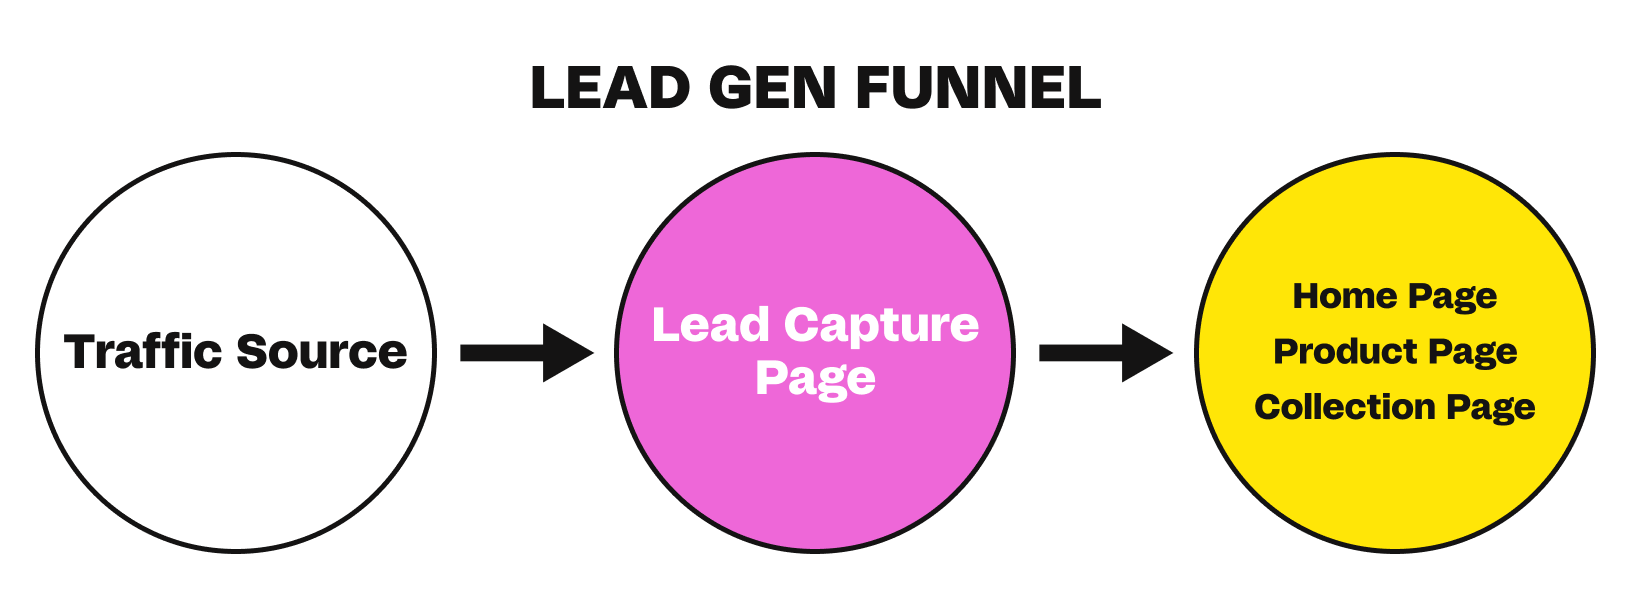 lead_generation_funnel